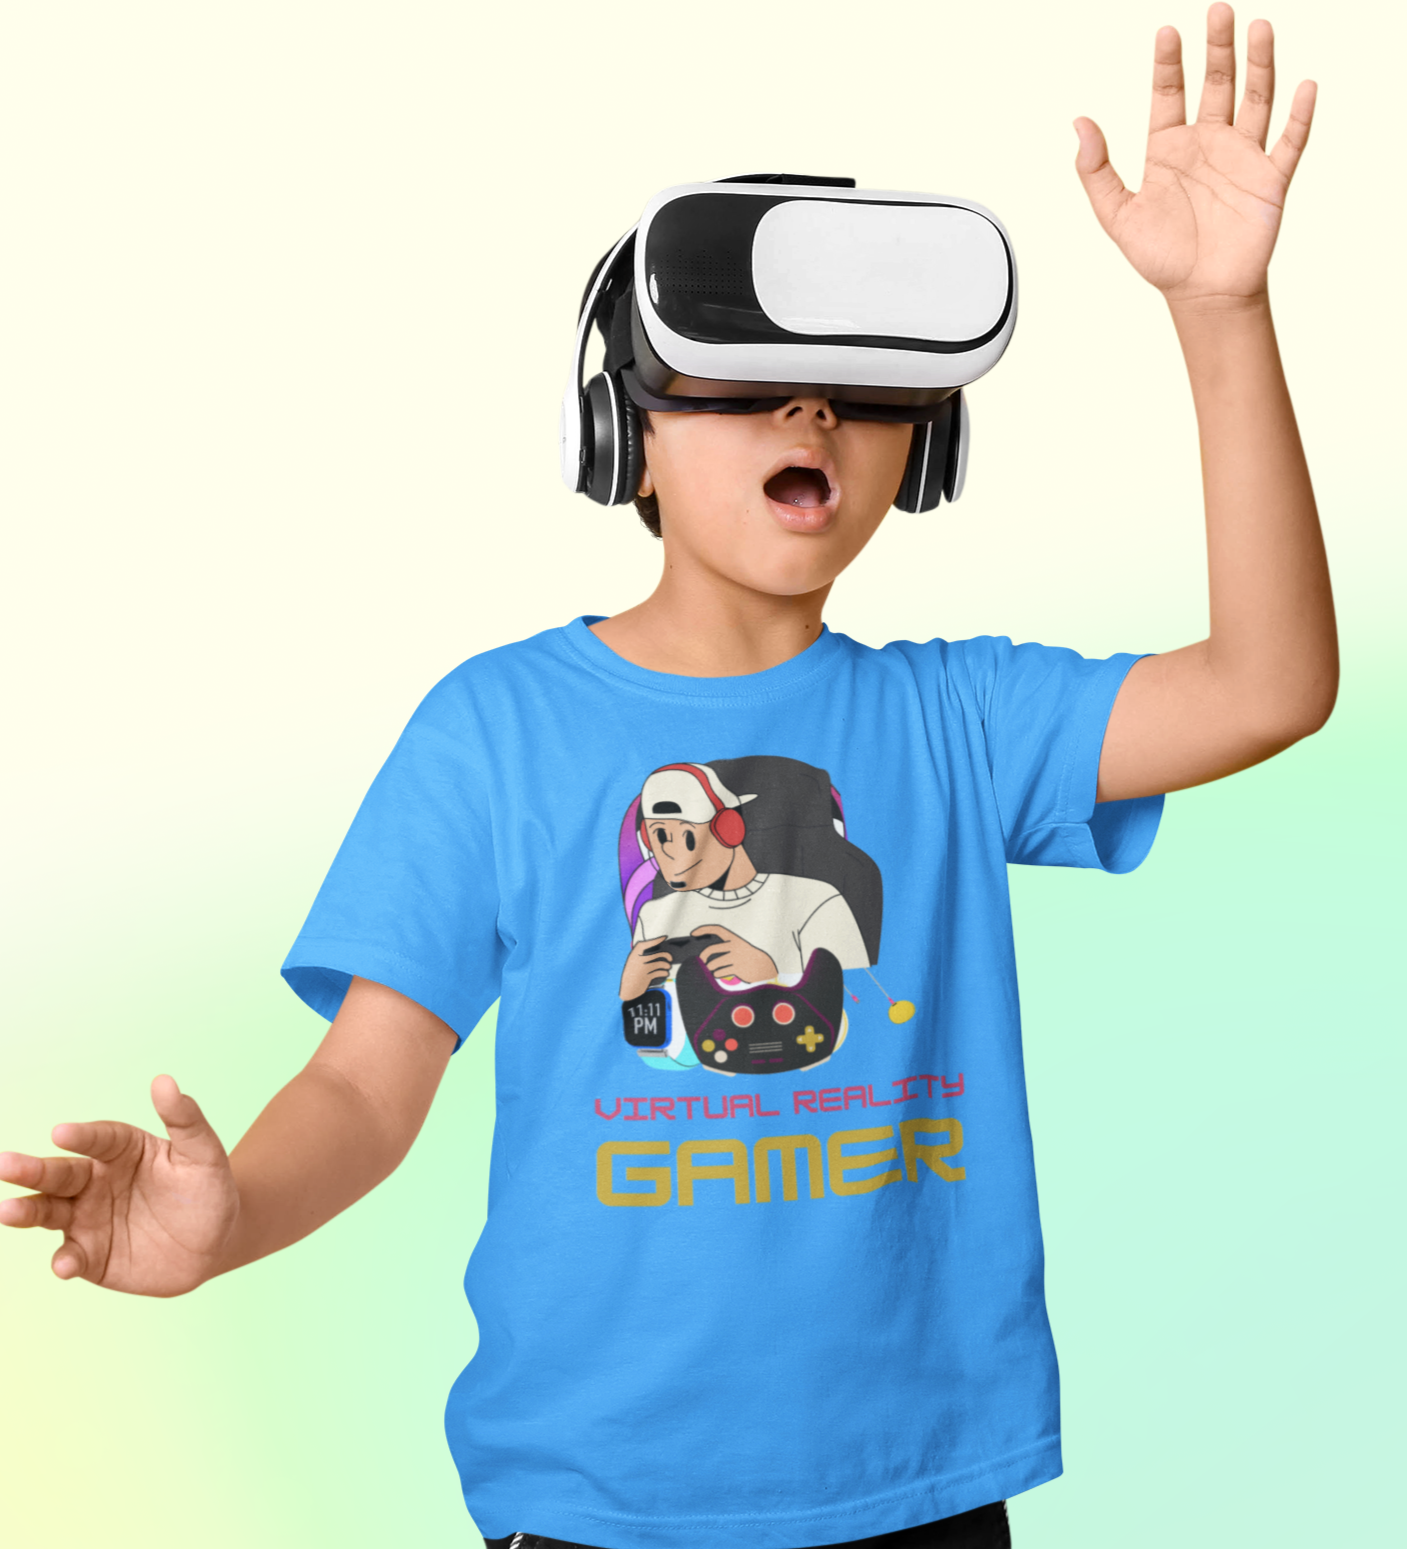 VR Gamer T-shirt for Kids Sky Blue